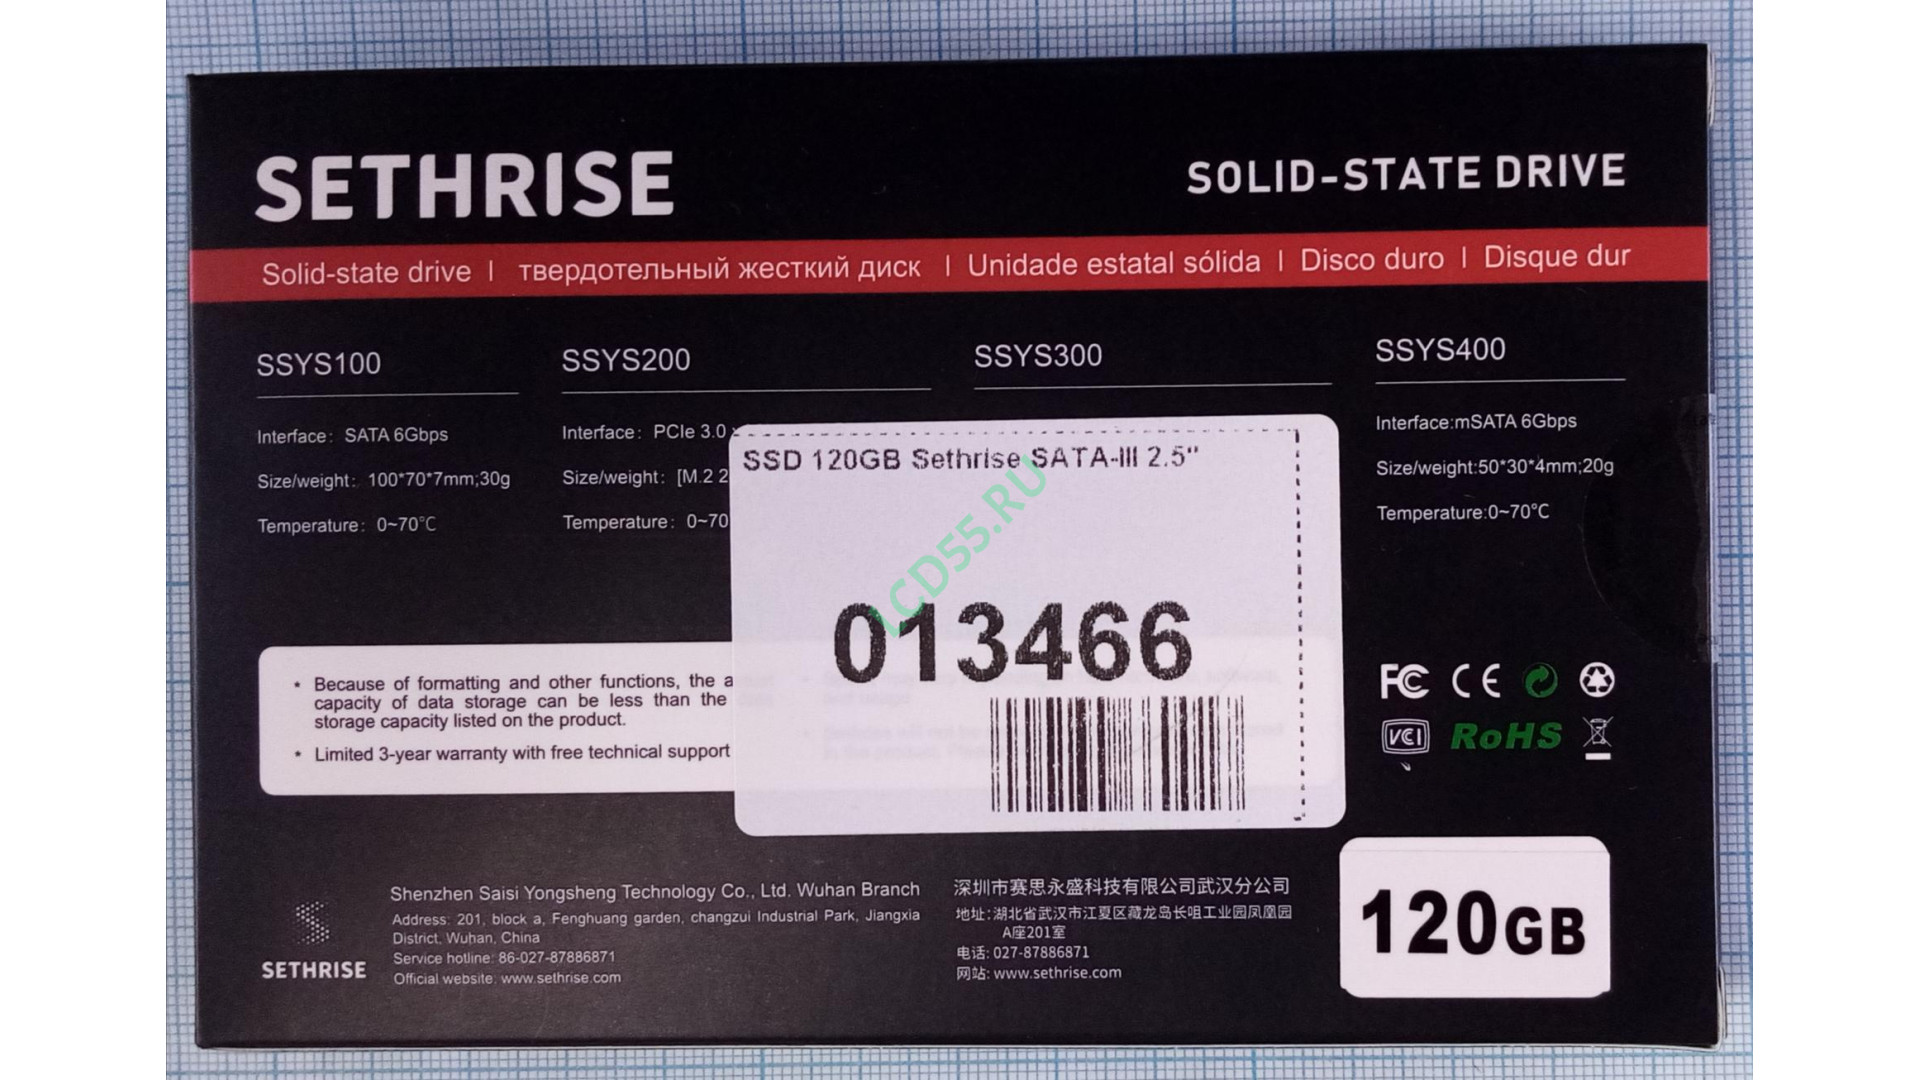 SSD 120GB Sethrise SATA-III 2.5"